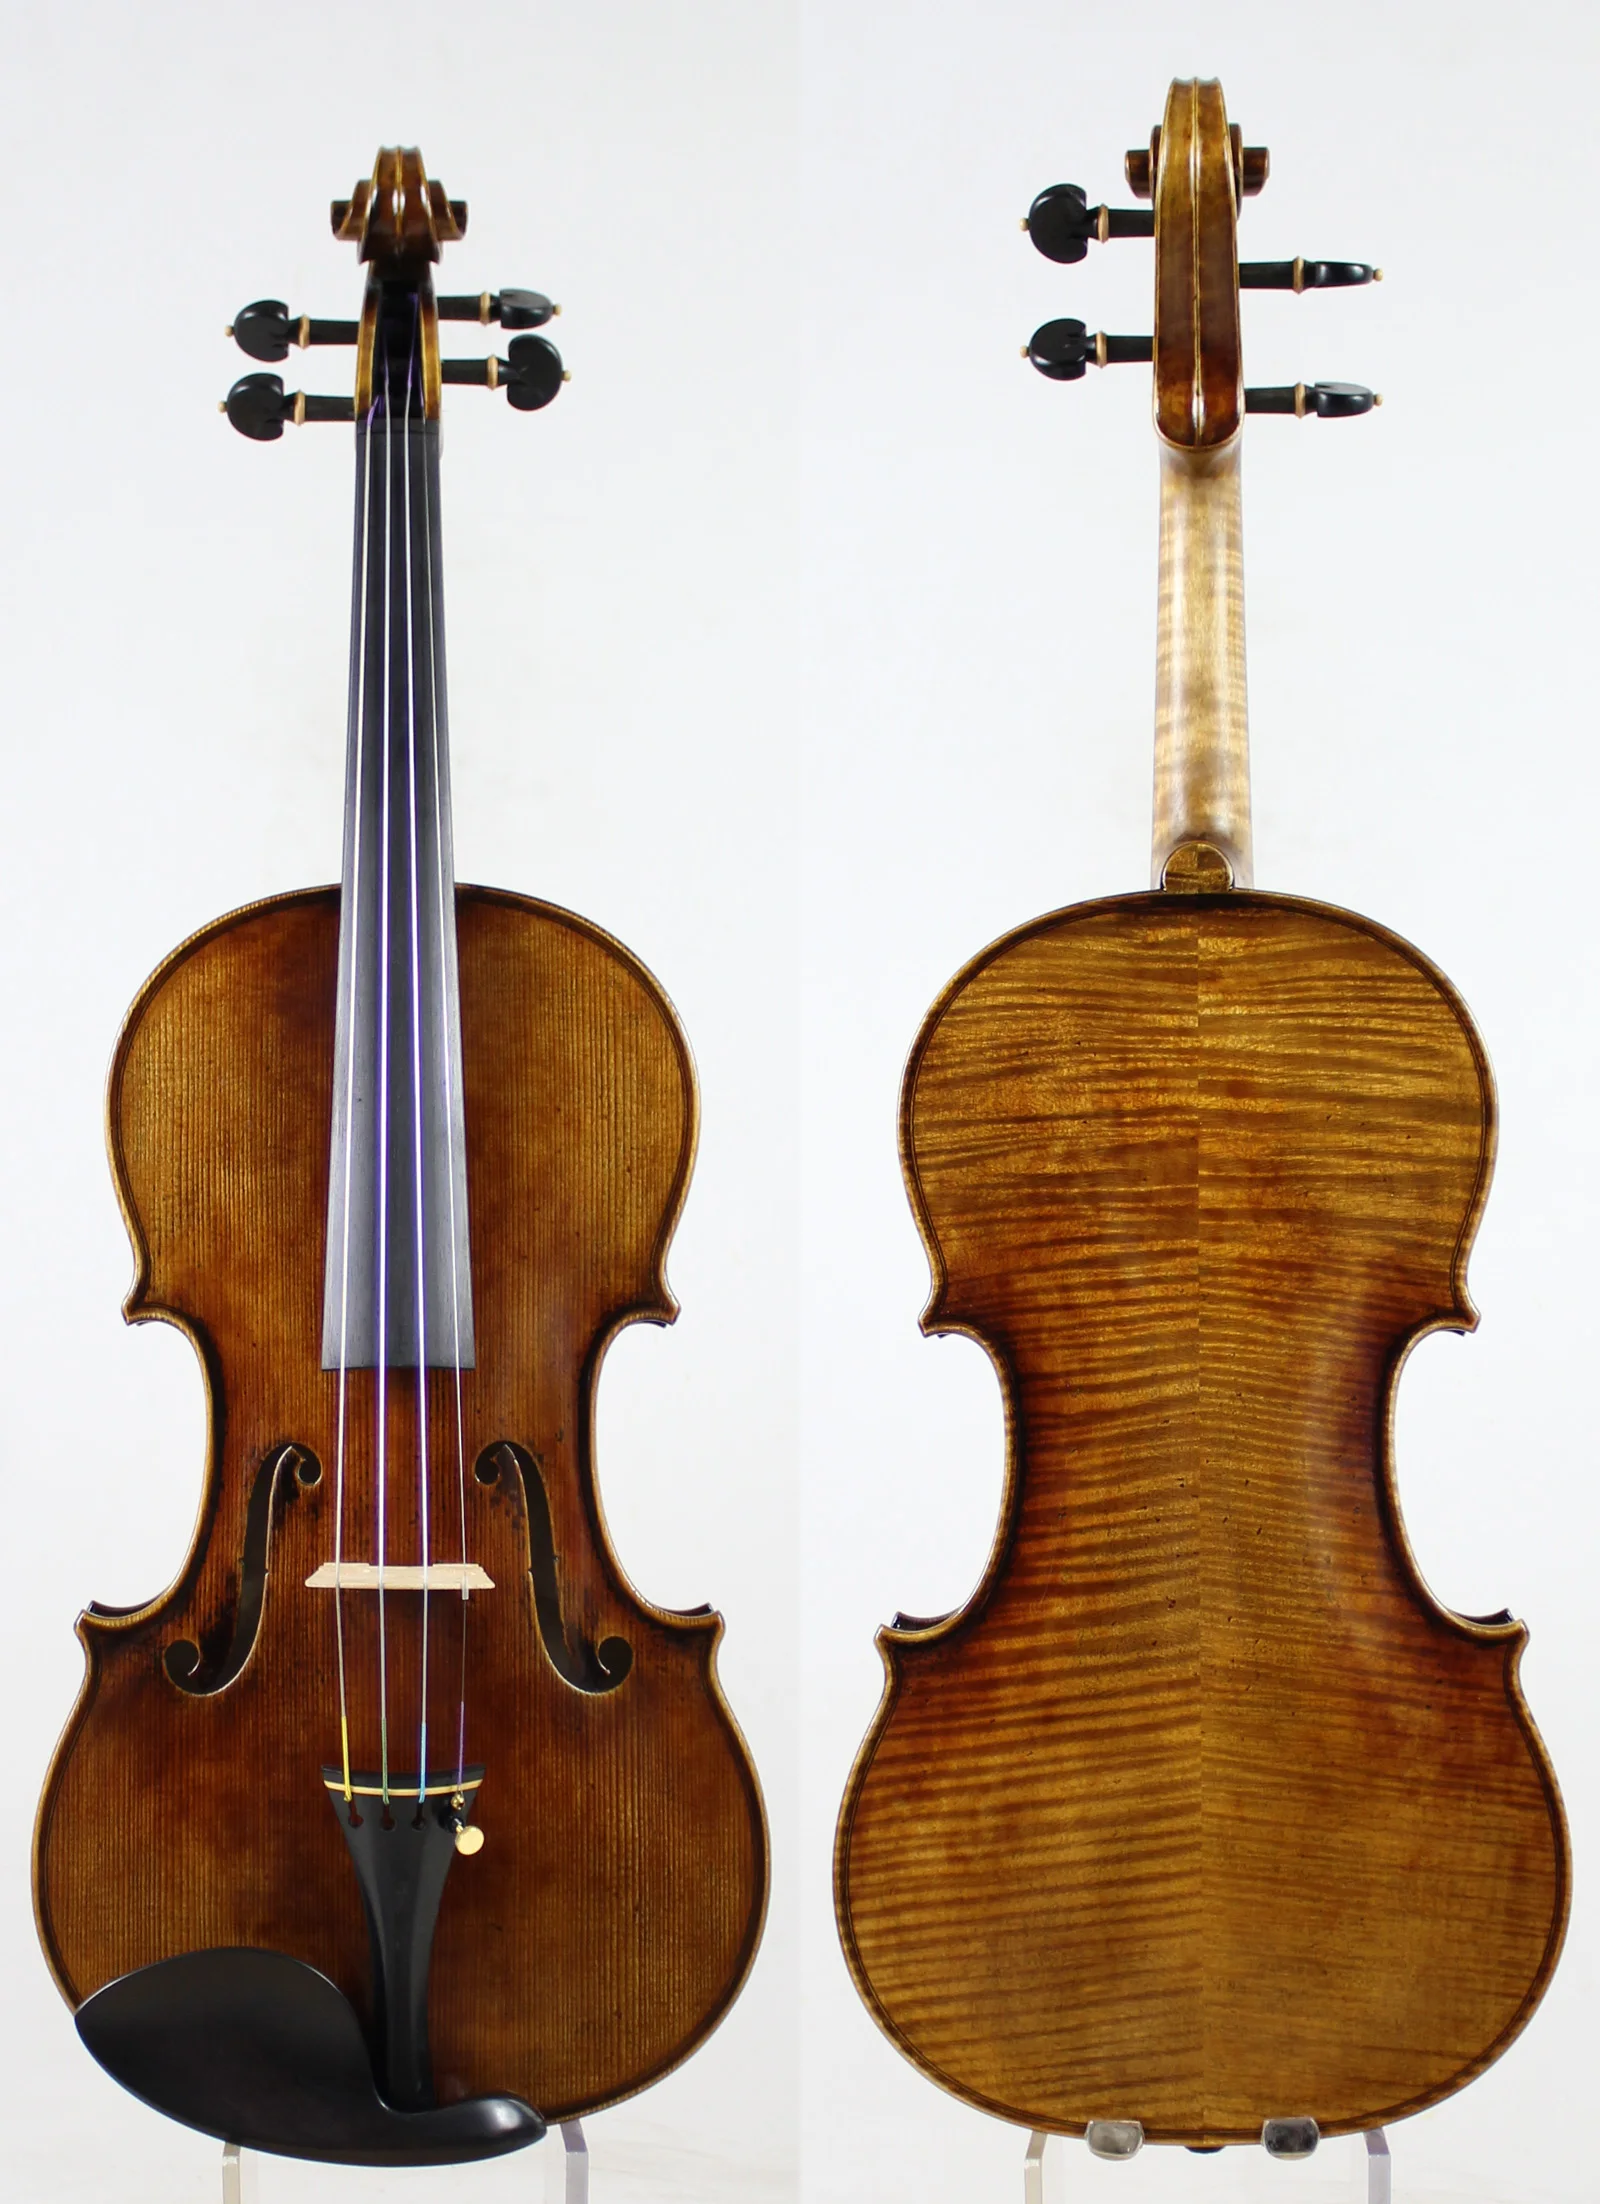 Мастер скрипки! Европейское дерево! Копия Antonio Stradivari! Сильный и глубокий тон!! мост Обер! Доминант 135B струны